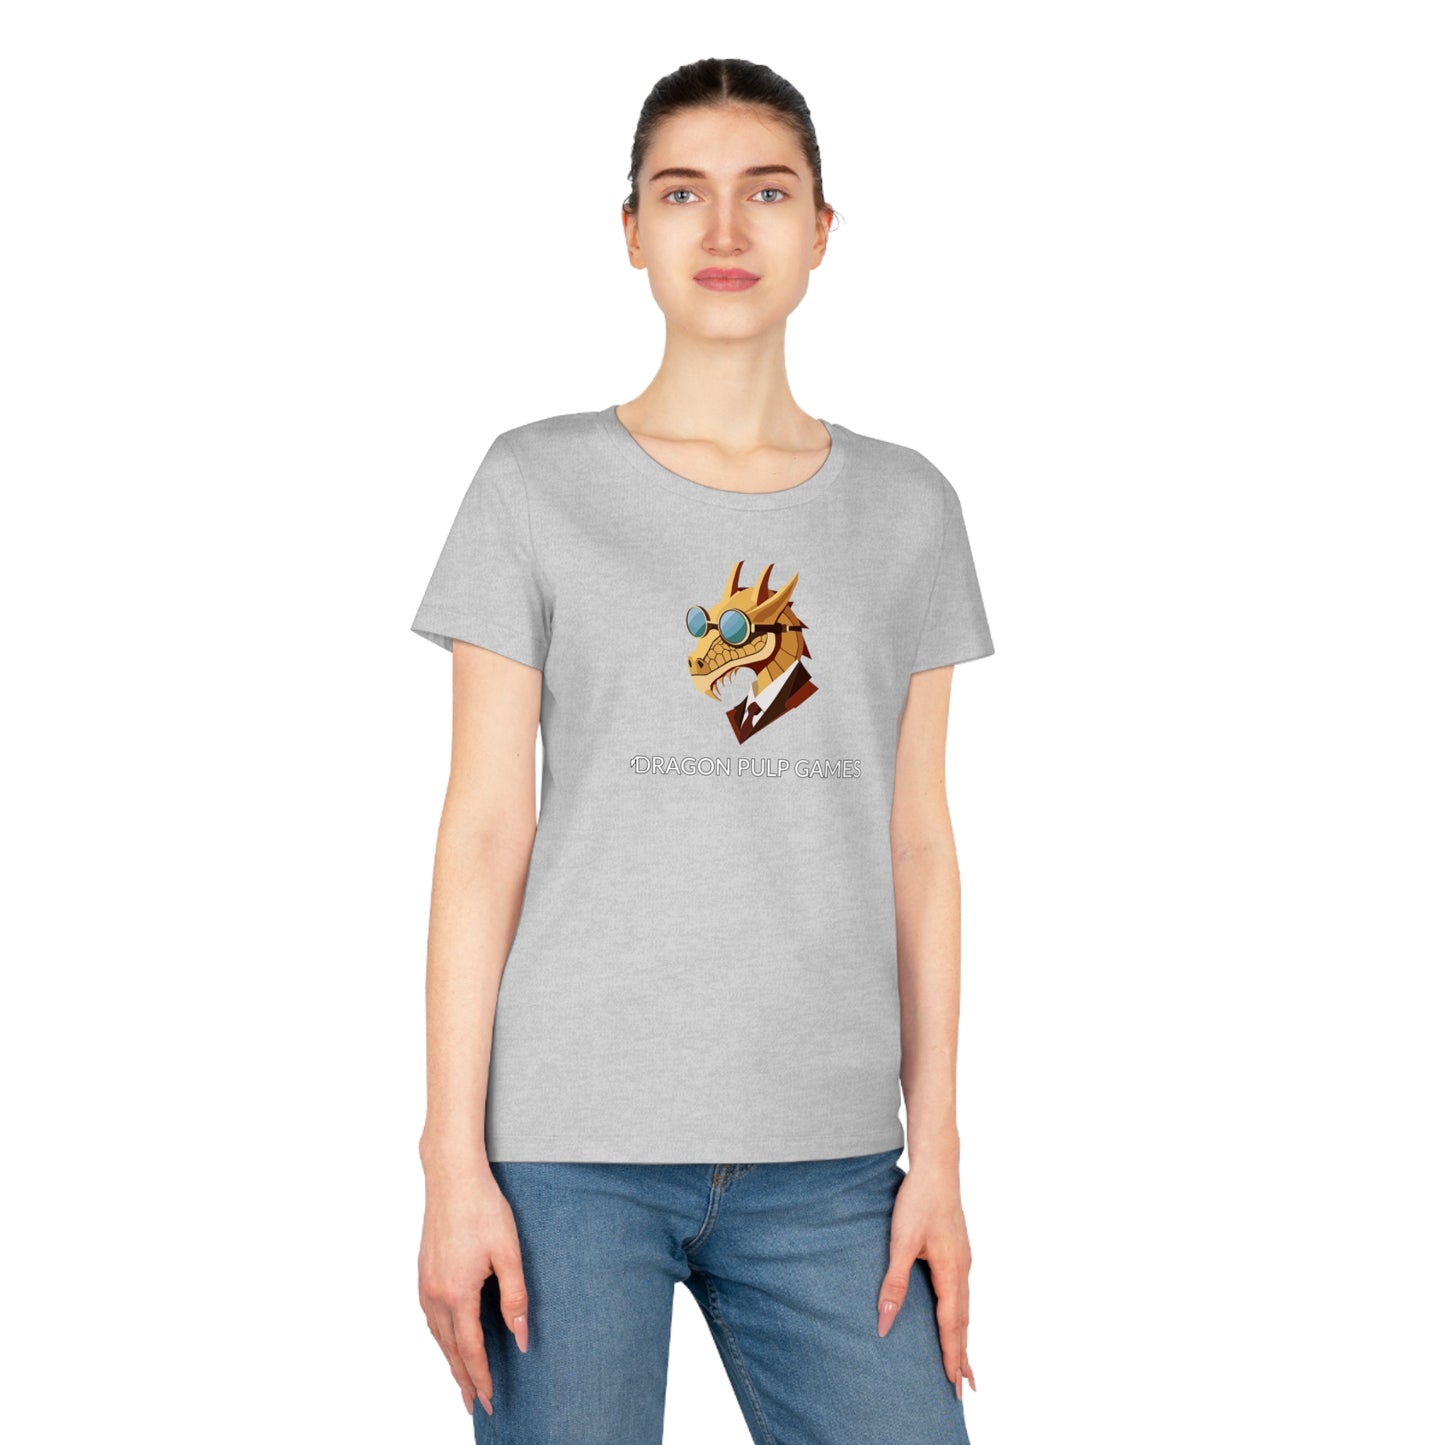 Dragon Pulp Games Expresser T-Shirt (Frauen)